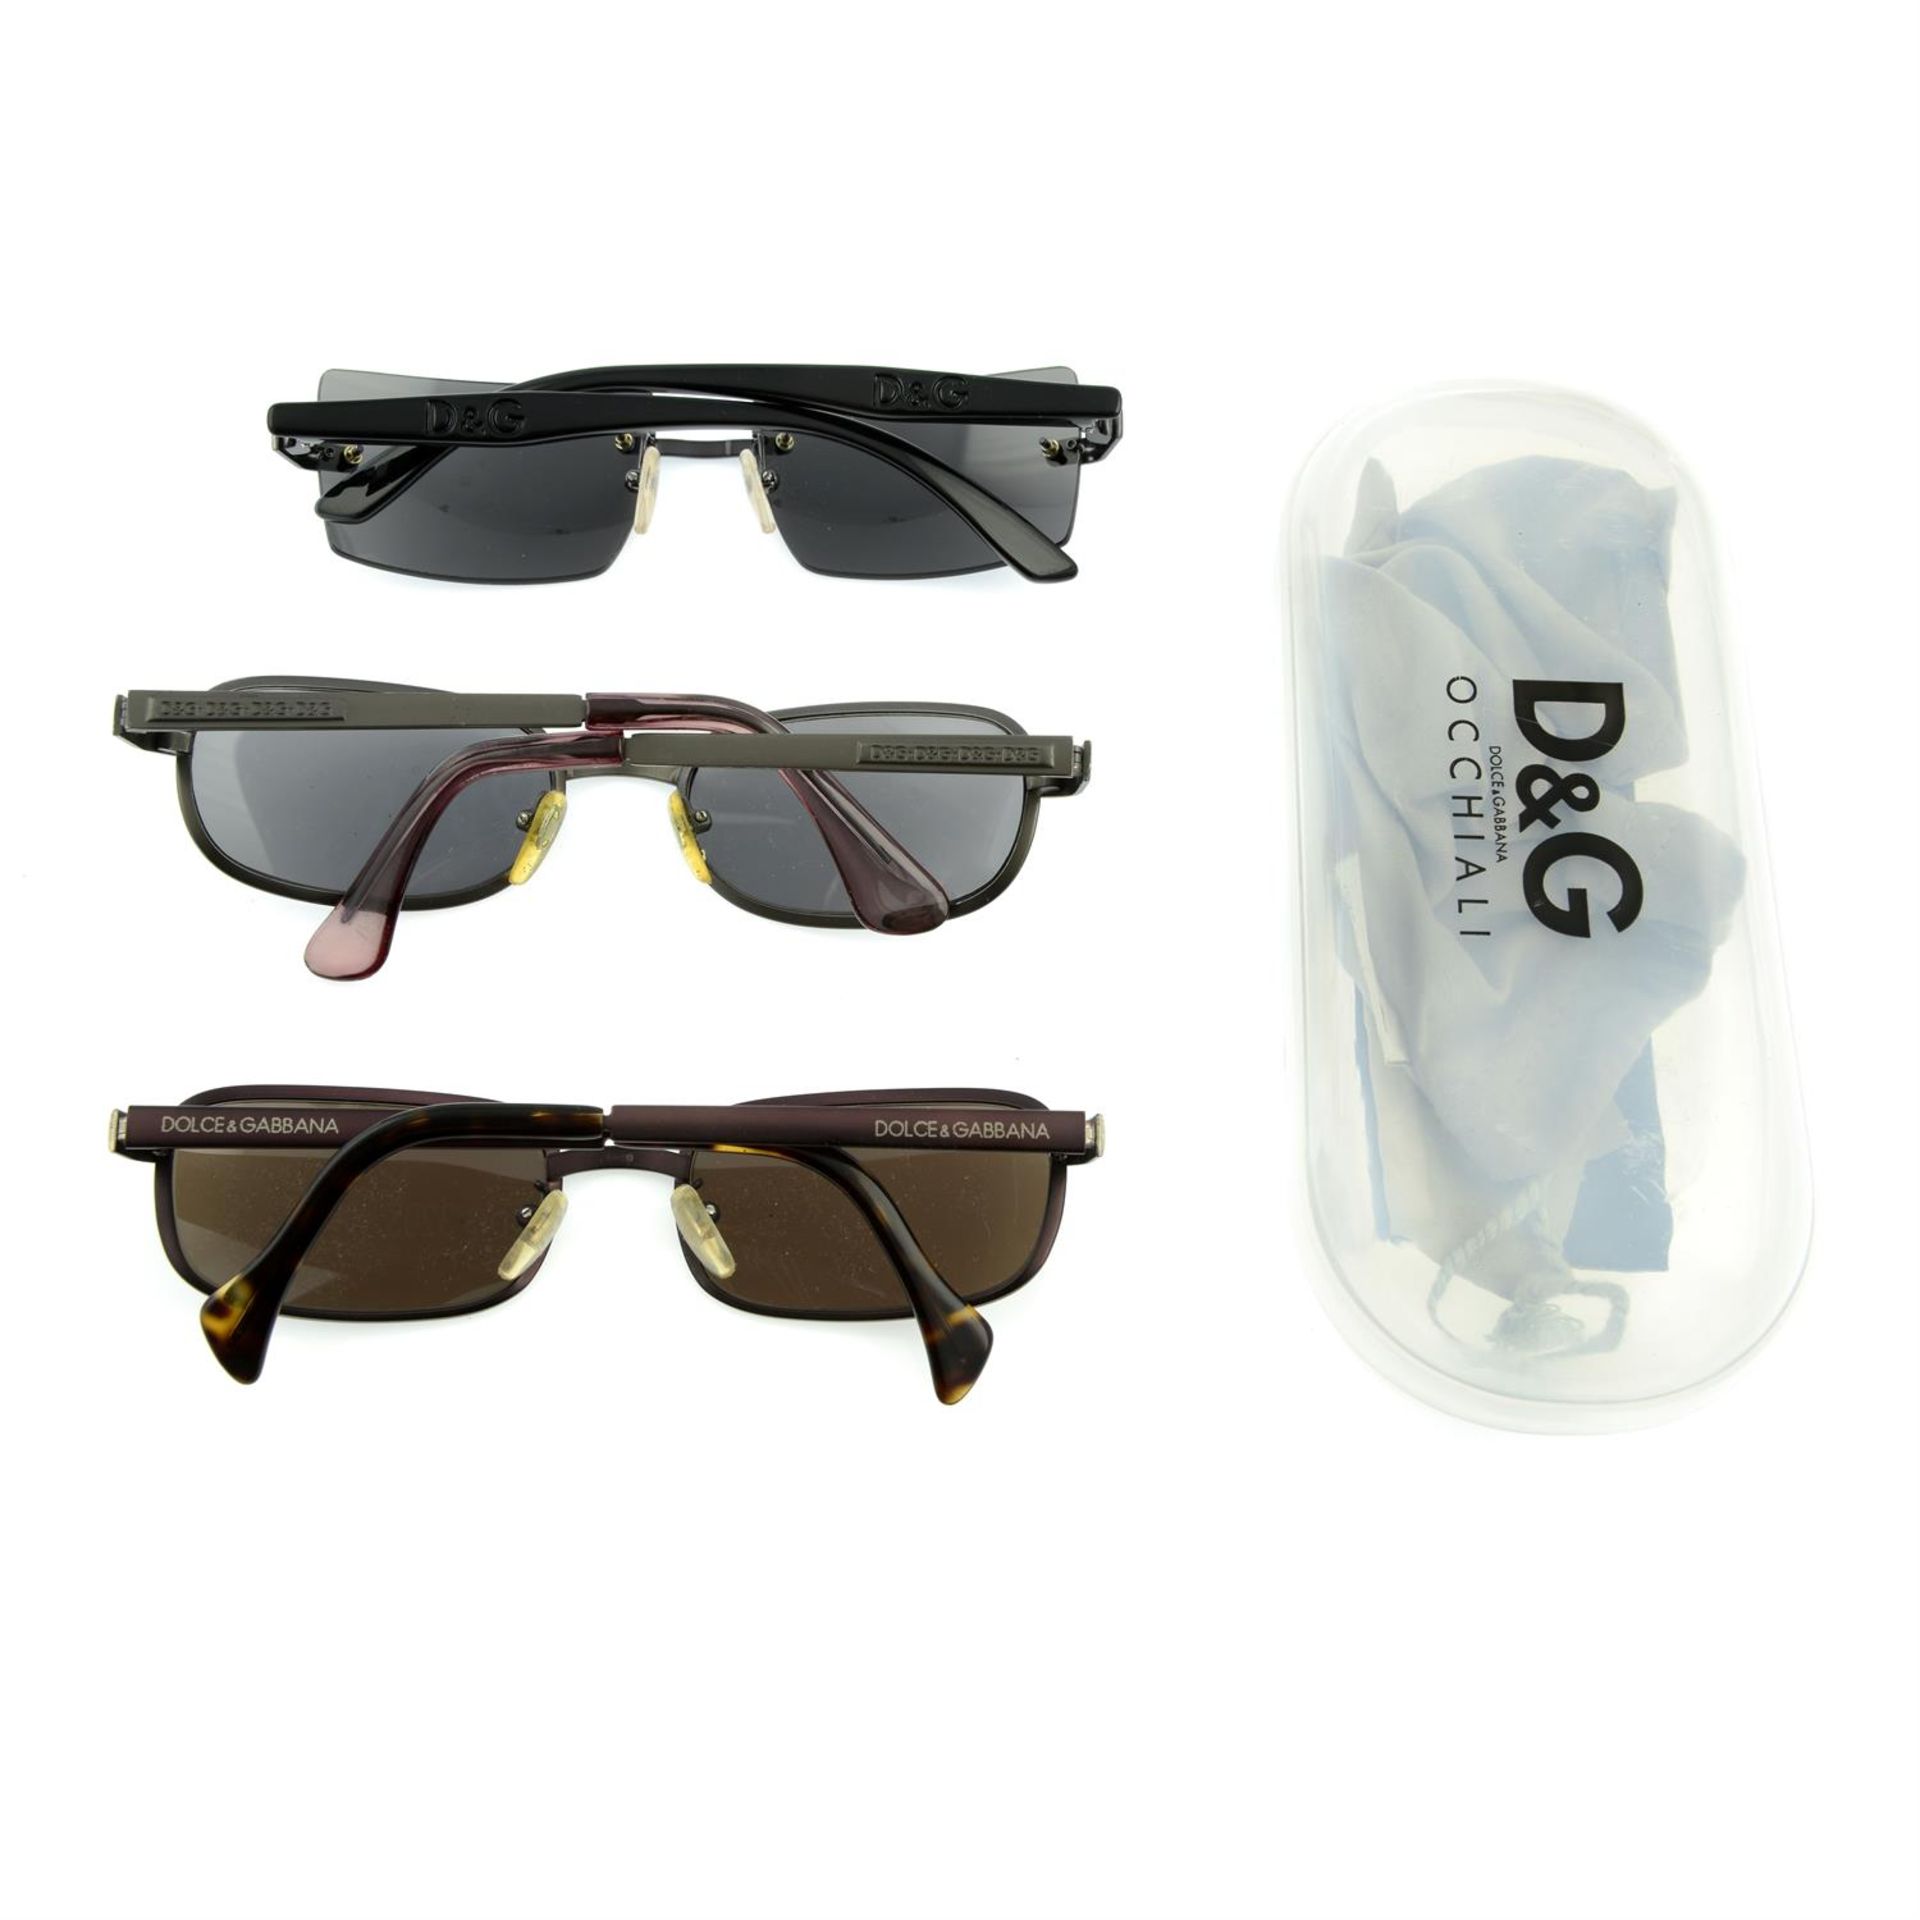 DOLCE & GABBANA - three pairs of sunglasses. - Image 2 of 2